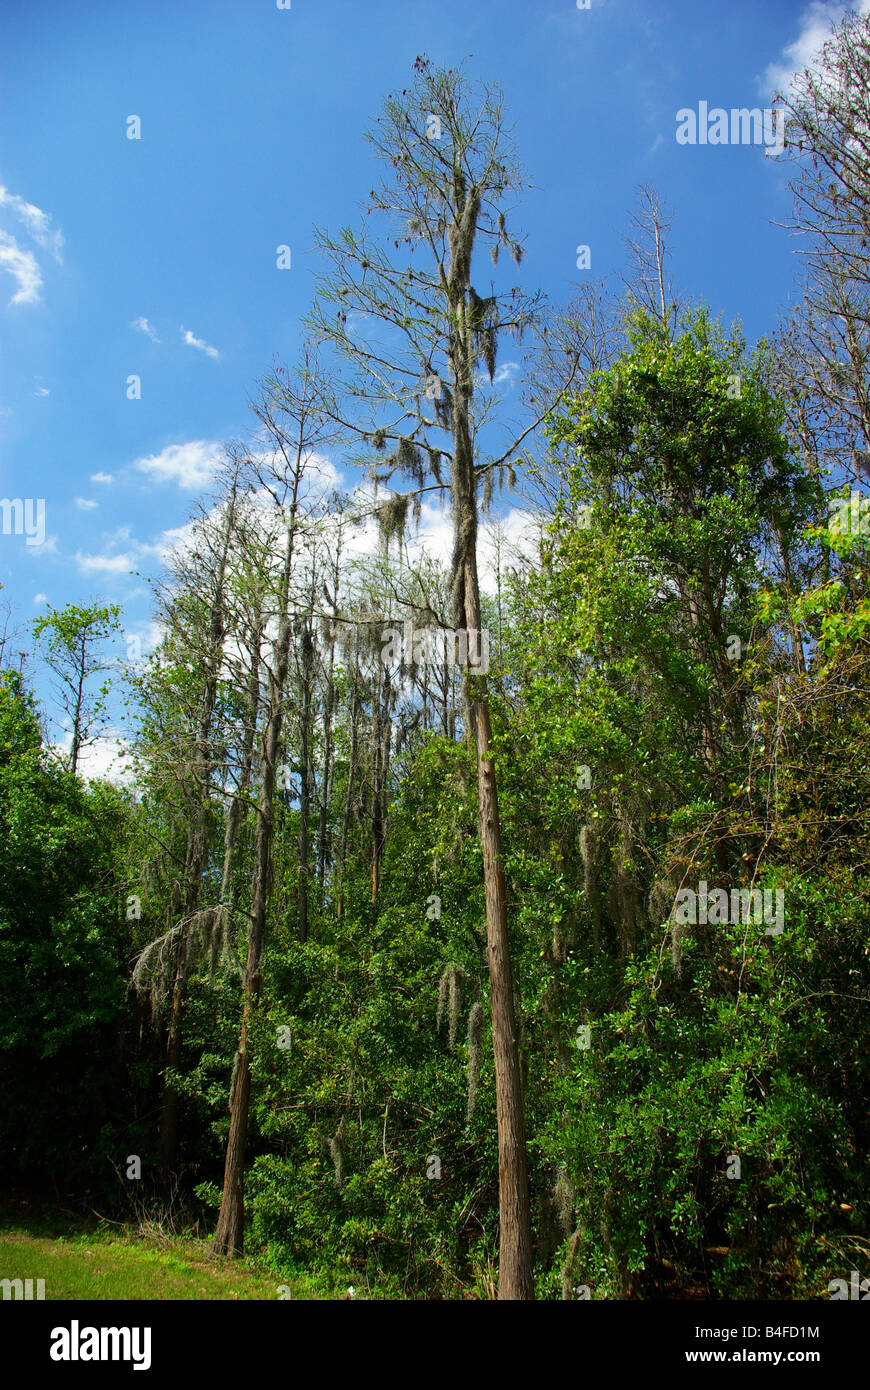 De grands arbres couverts de mousse espagnole, près de Tampa, Floride Banque D'Images